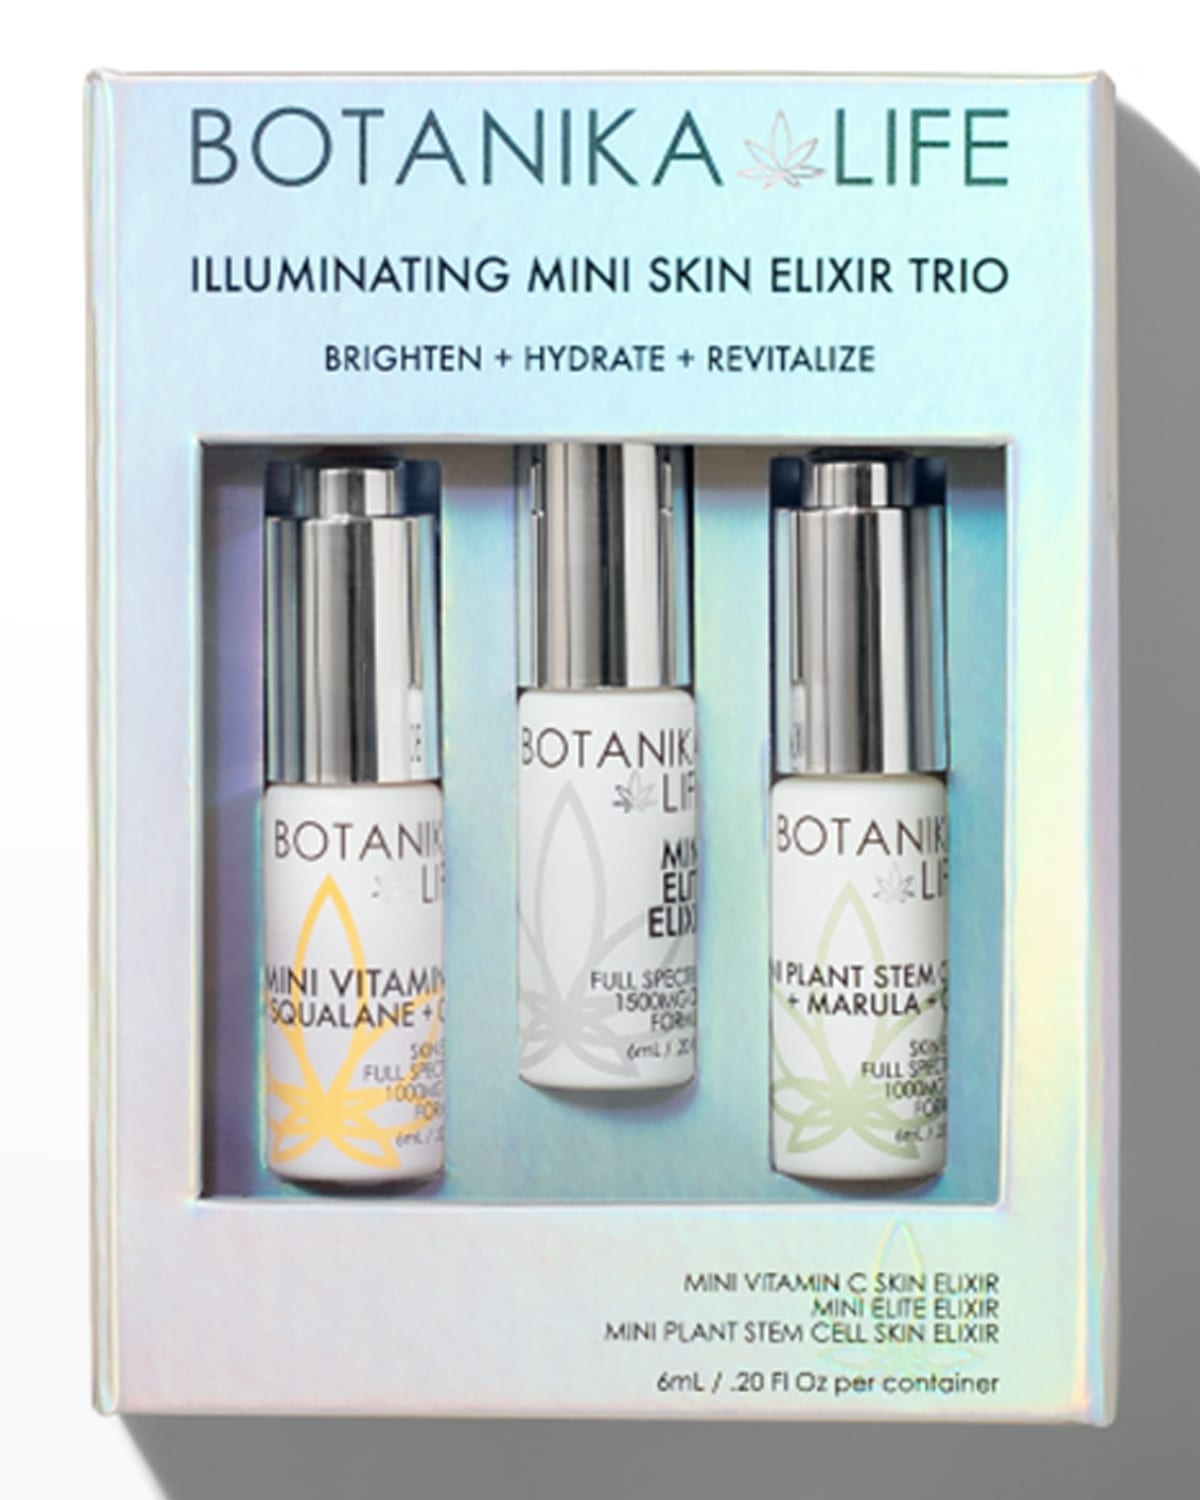 Botanika Life Illuminating Mini Skin Elixir Trio